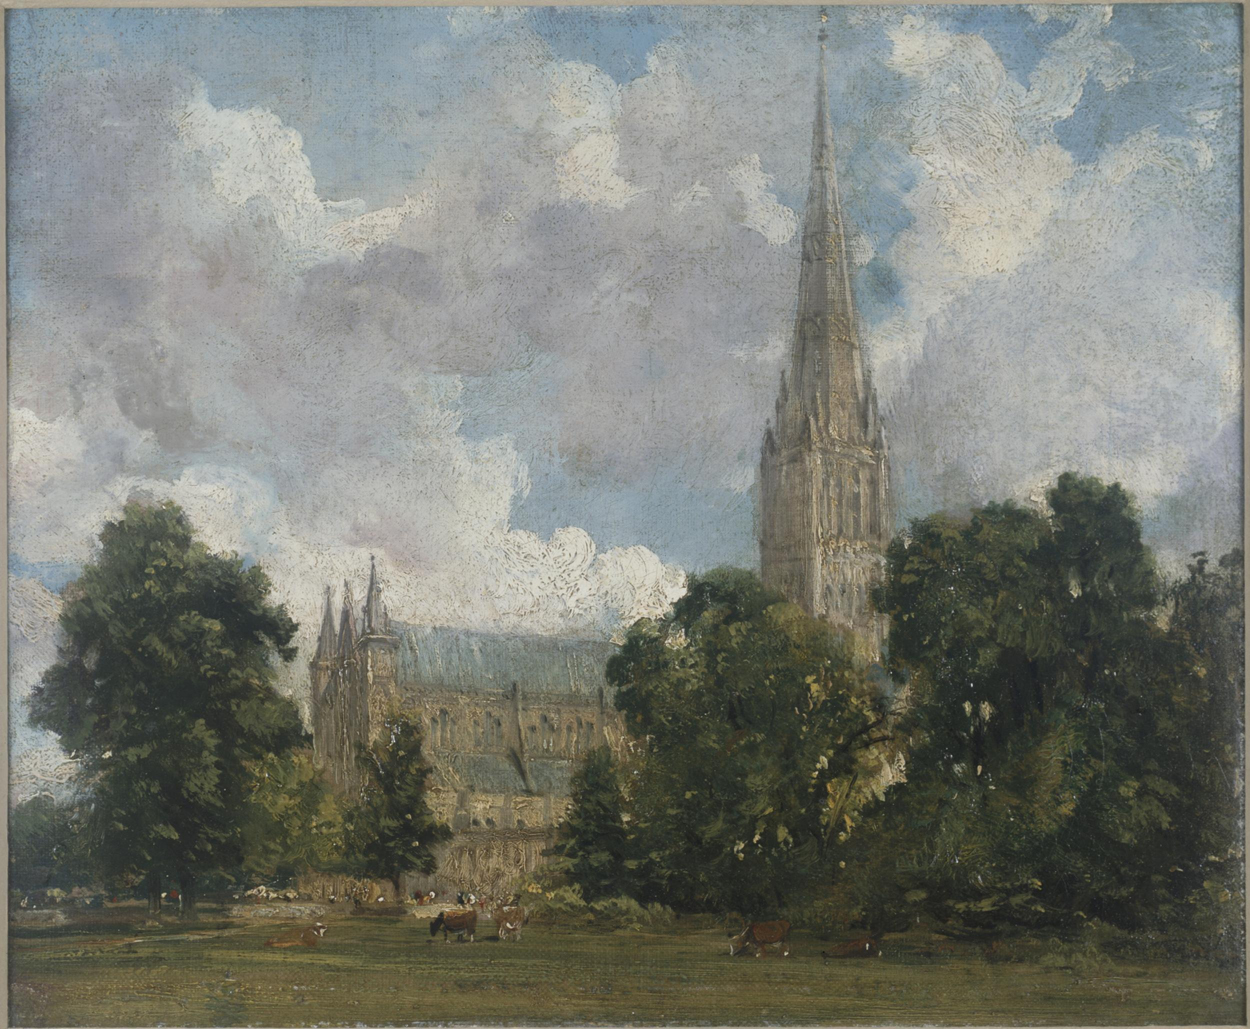 南西から見たソールズベリー大聖堂 by John Constable - 1820年頃 - 25 x 30 cm 